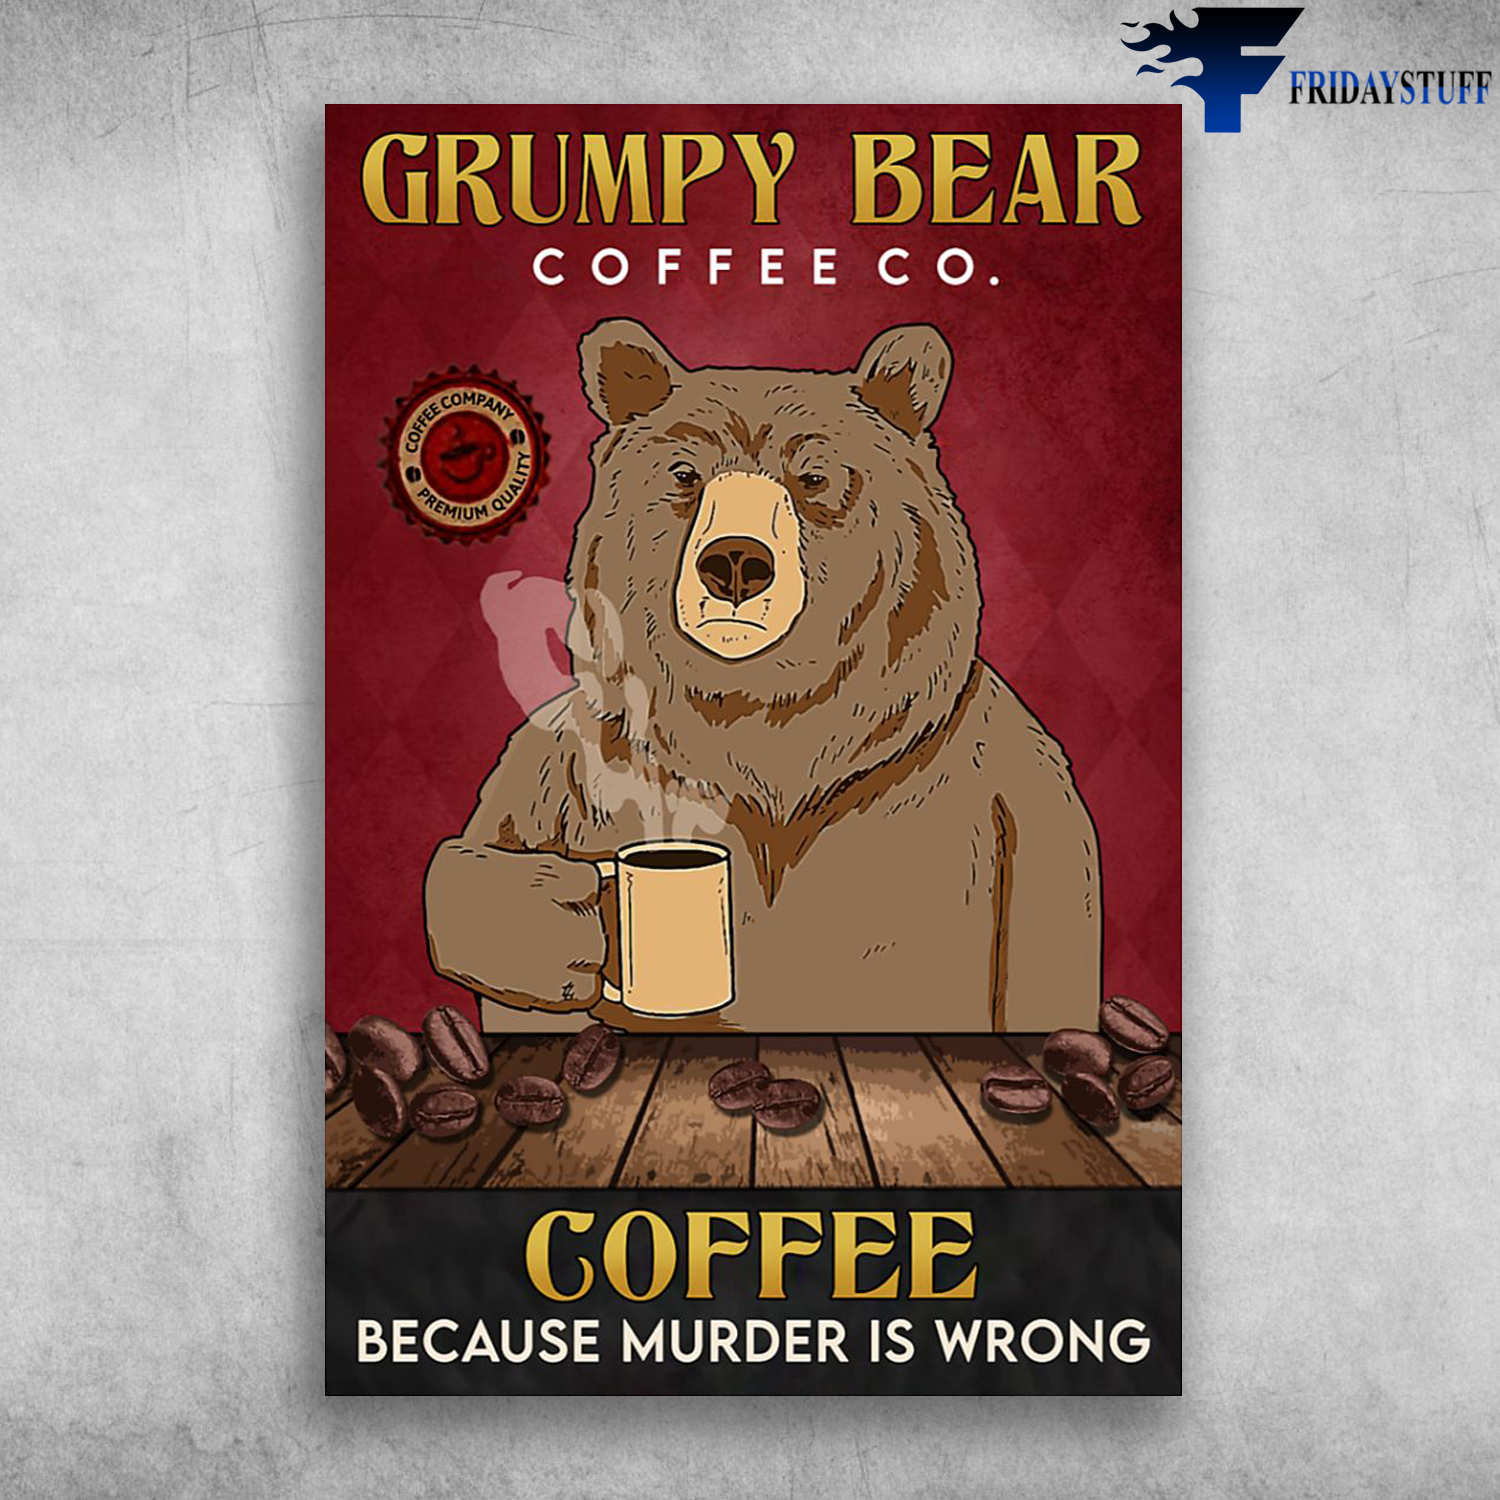 Grumpy Bear Love Coffee - Grumpy Bear, Coffee Co., Coffee, Because Murder Is Wrong